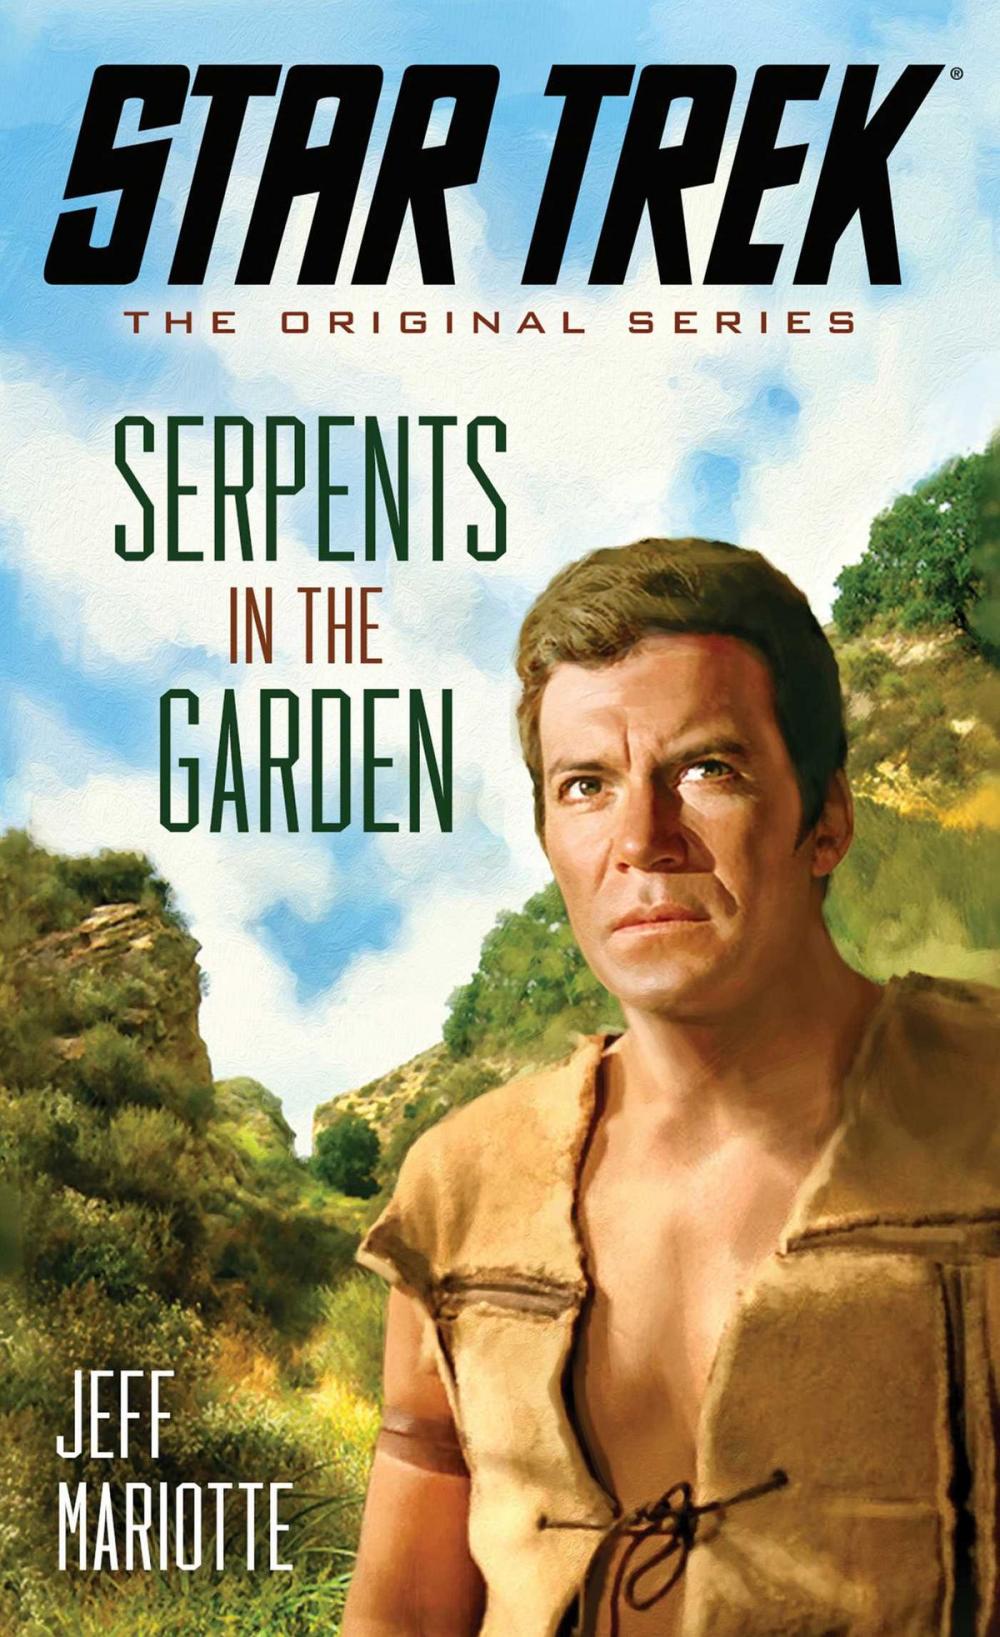 Big bigCover of Star Trek: The Original Series: Serpents in the Garden